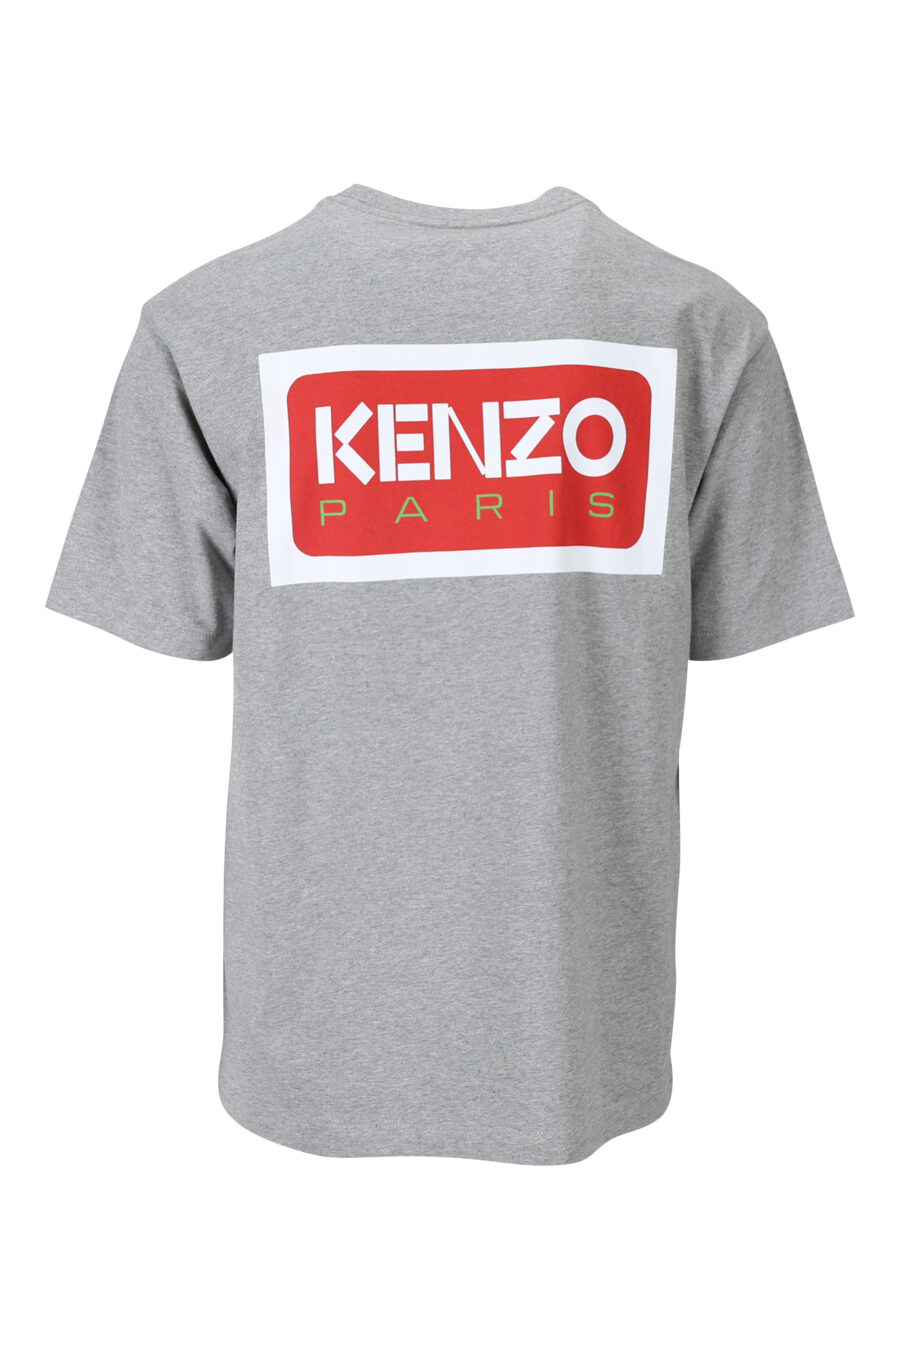 Camiseta gris con minilogo "kenzo paris" - 3612230543188 1